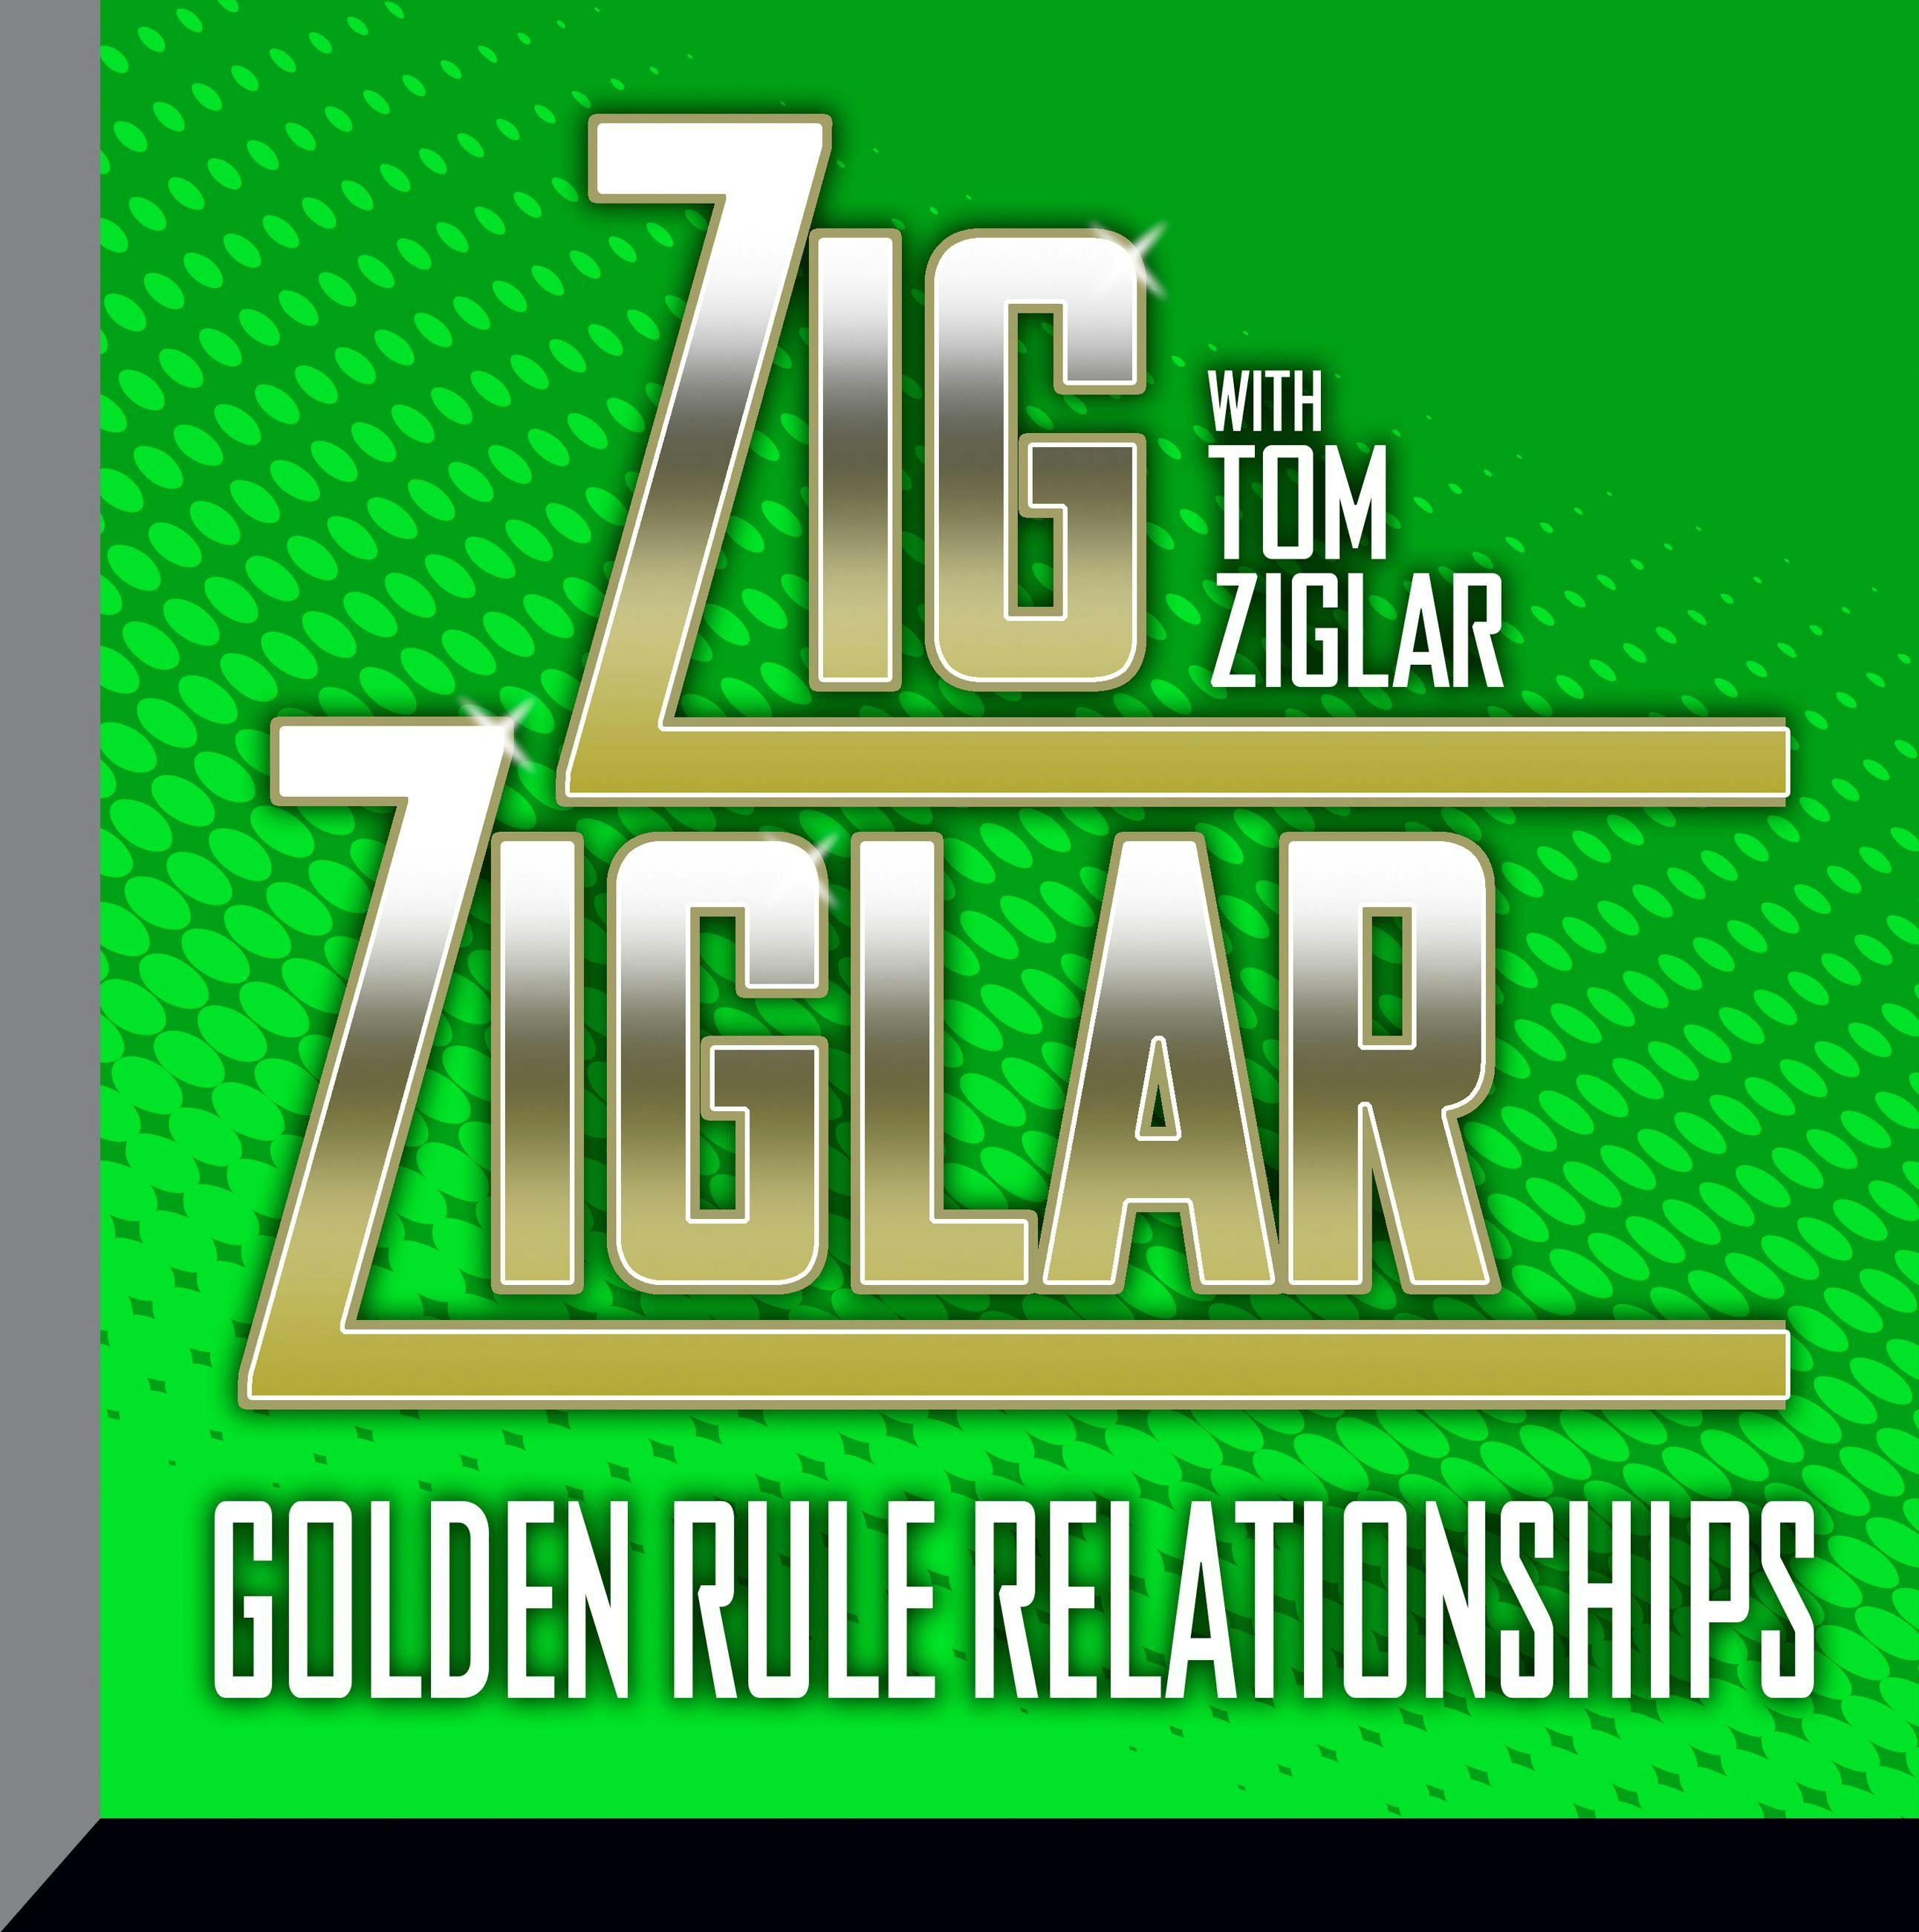 Golden Rule Relationships - Tom Ziglar, Zig Ziglar